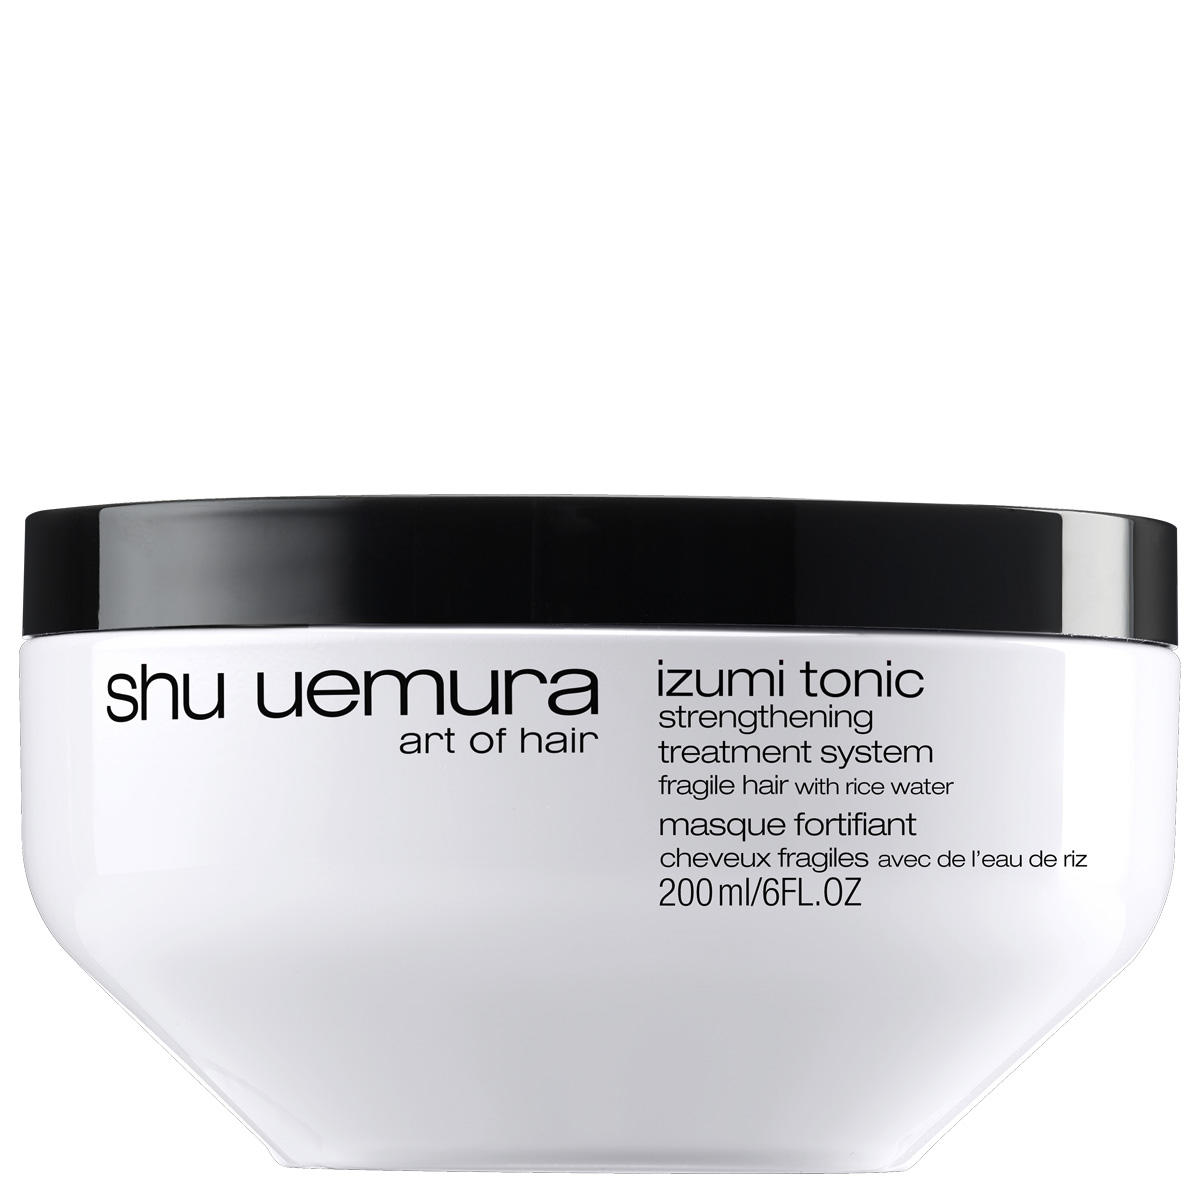 Shu Uemura Izumi Tonic Versterkend masker 200 ml - 1